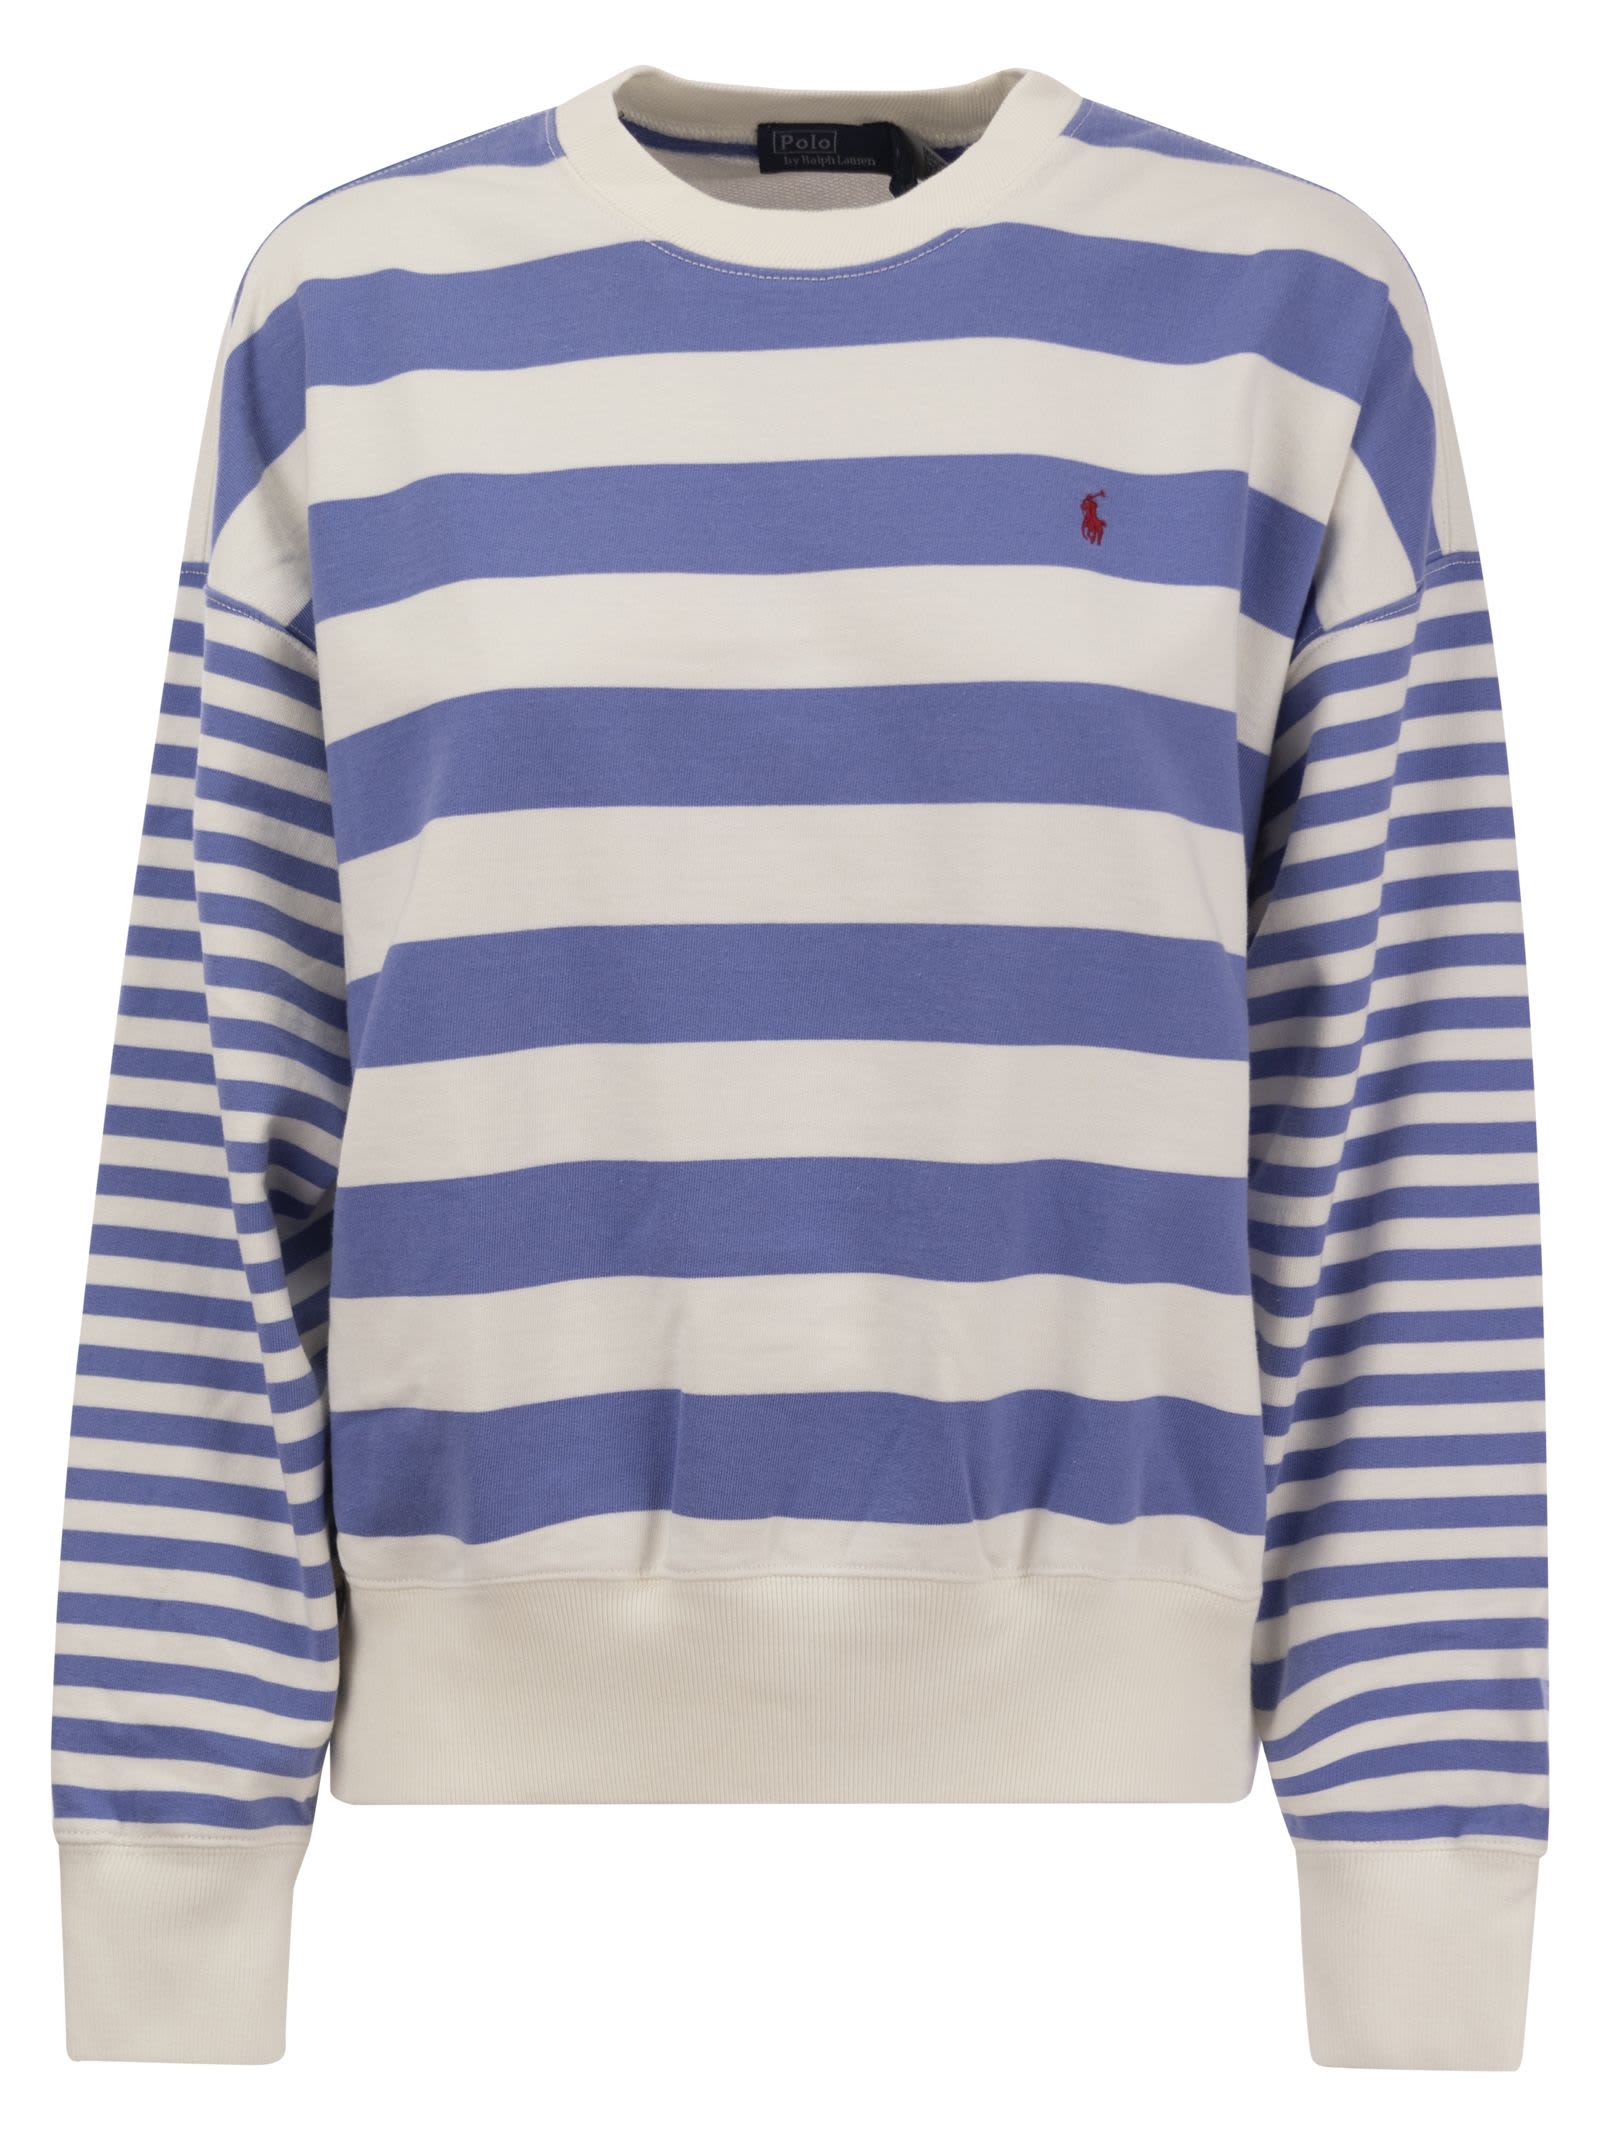 Crew-neck Sweatshirt With Stripes